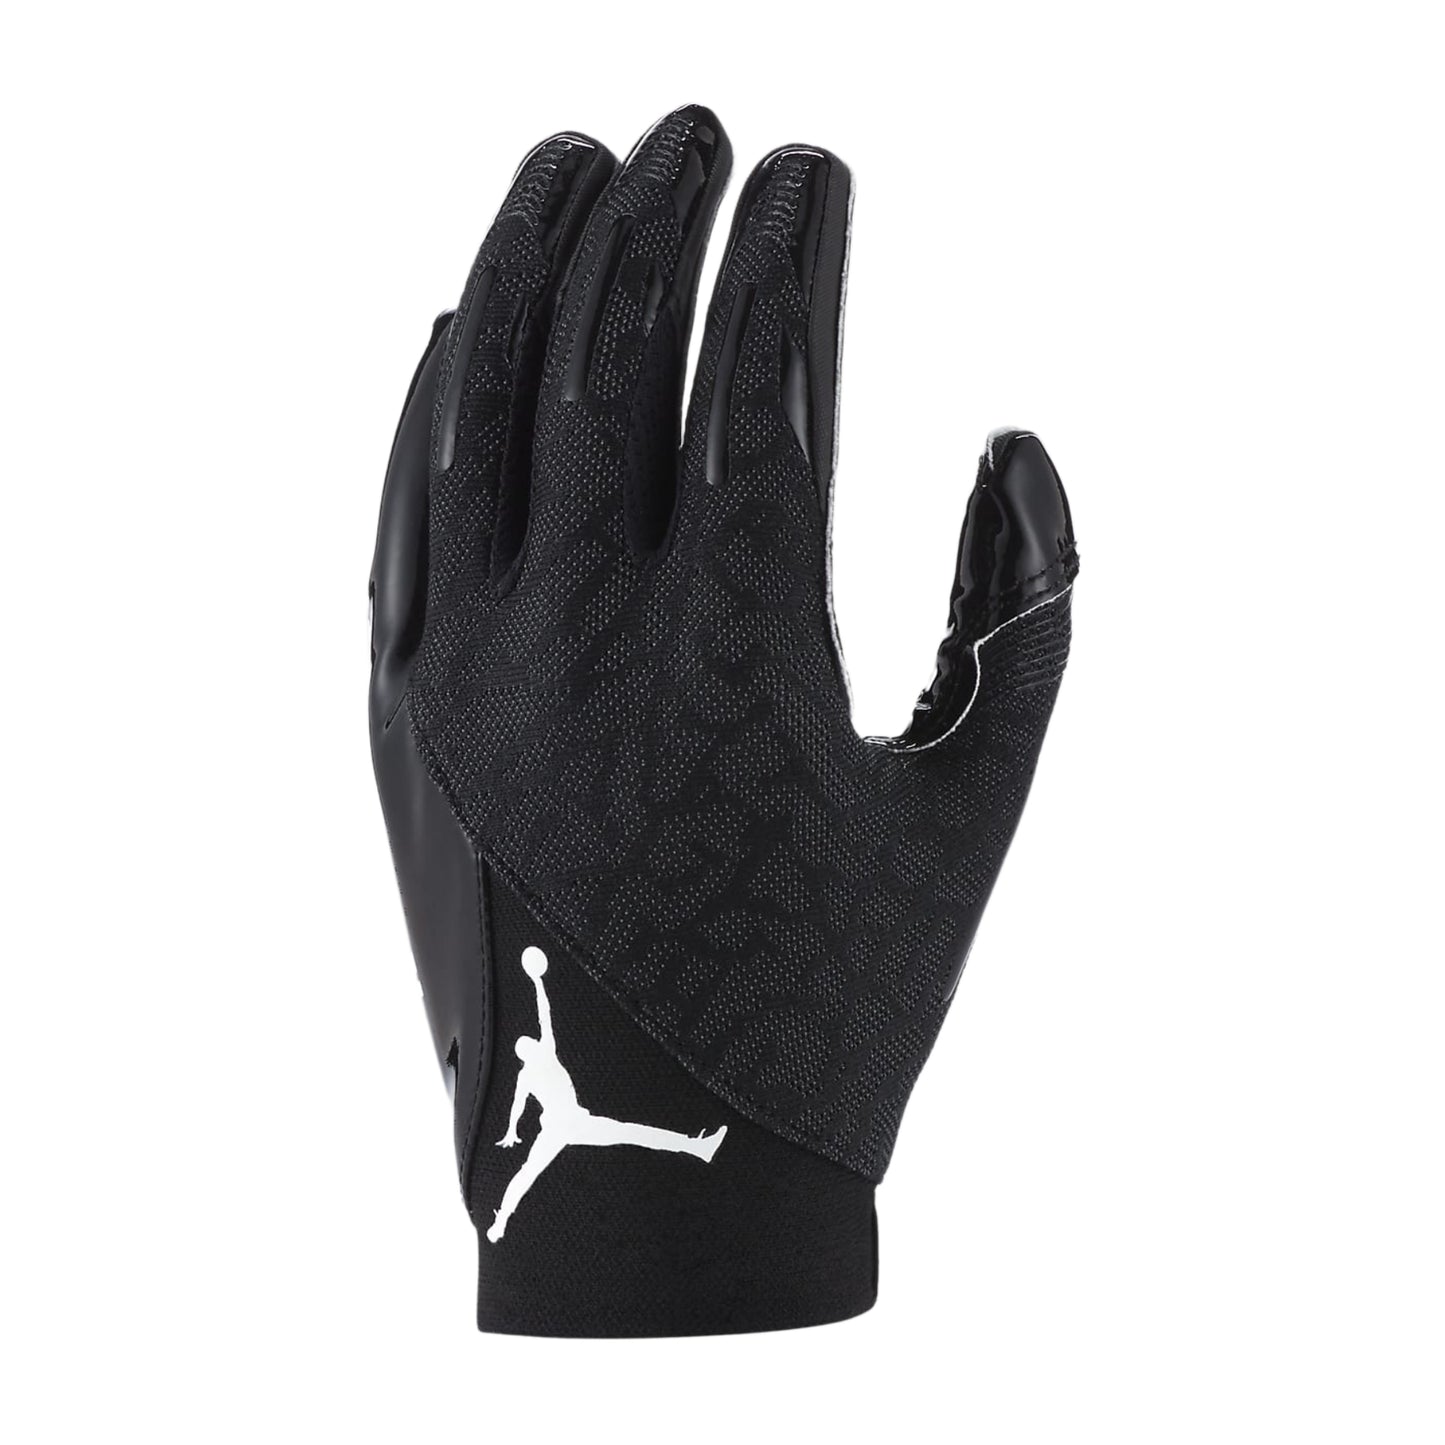 Jordan Knit Football Gloves - Black